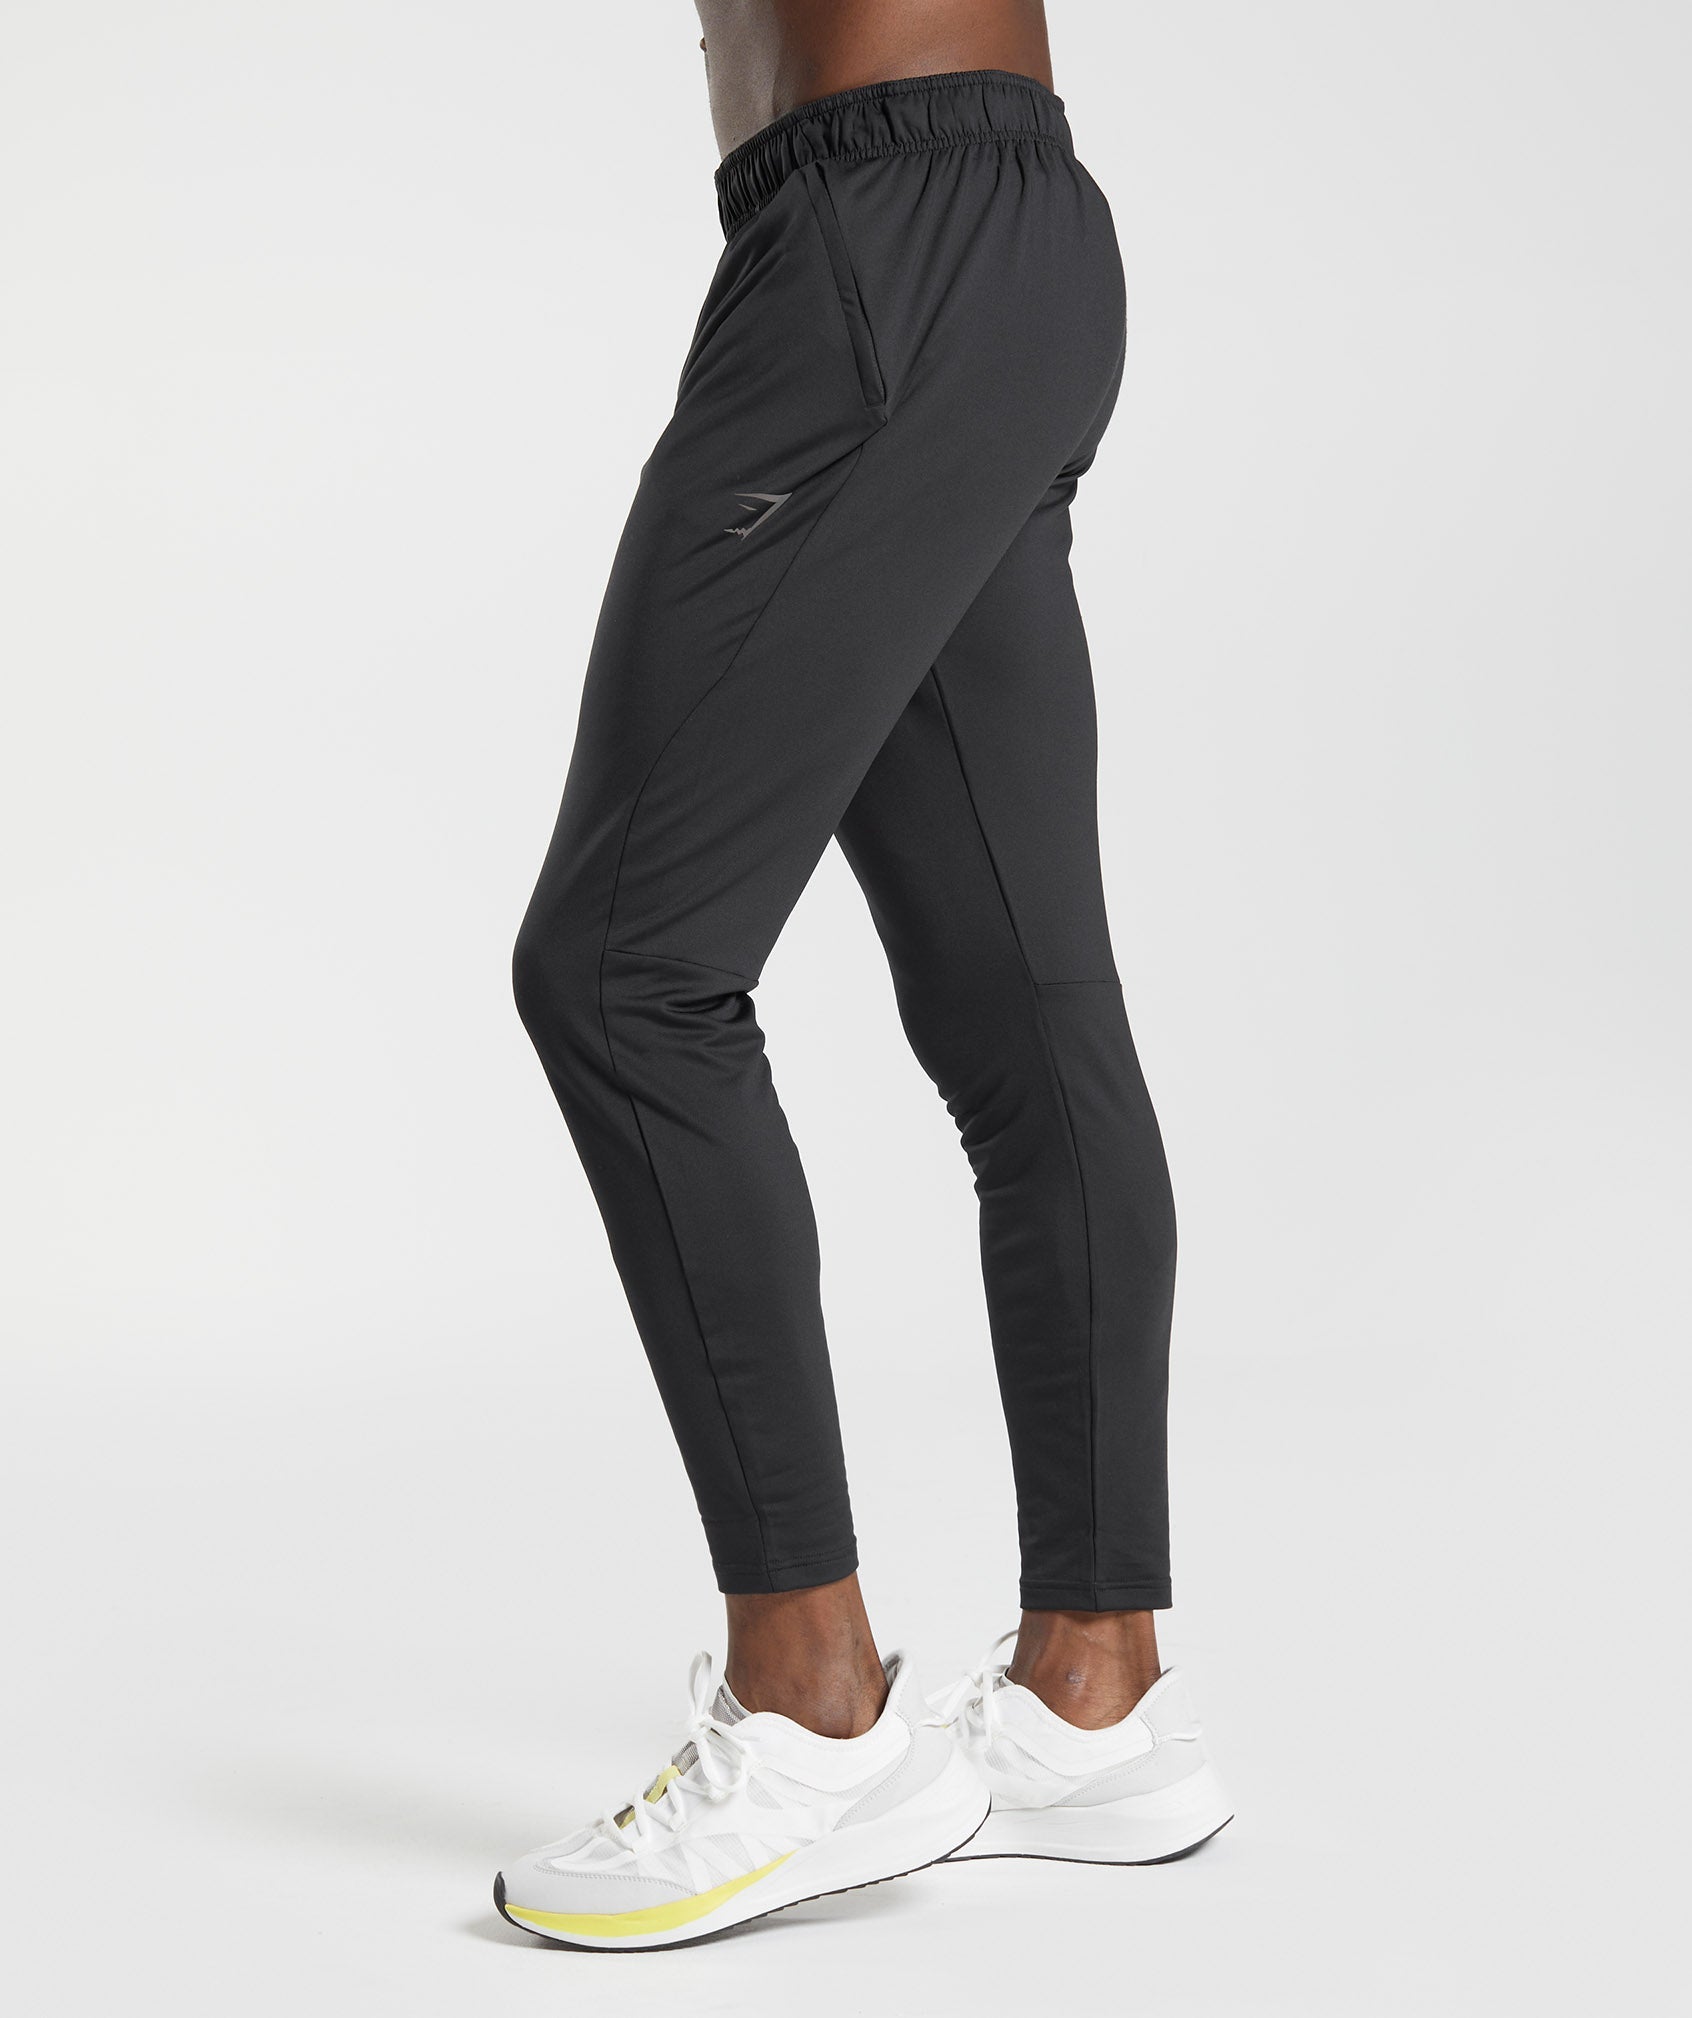 Gymshark Black Track Pants for Women